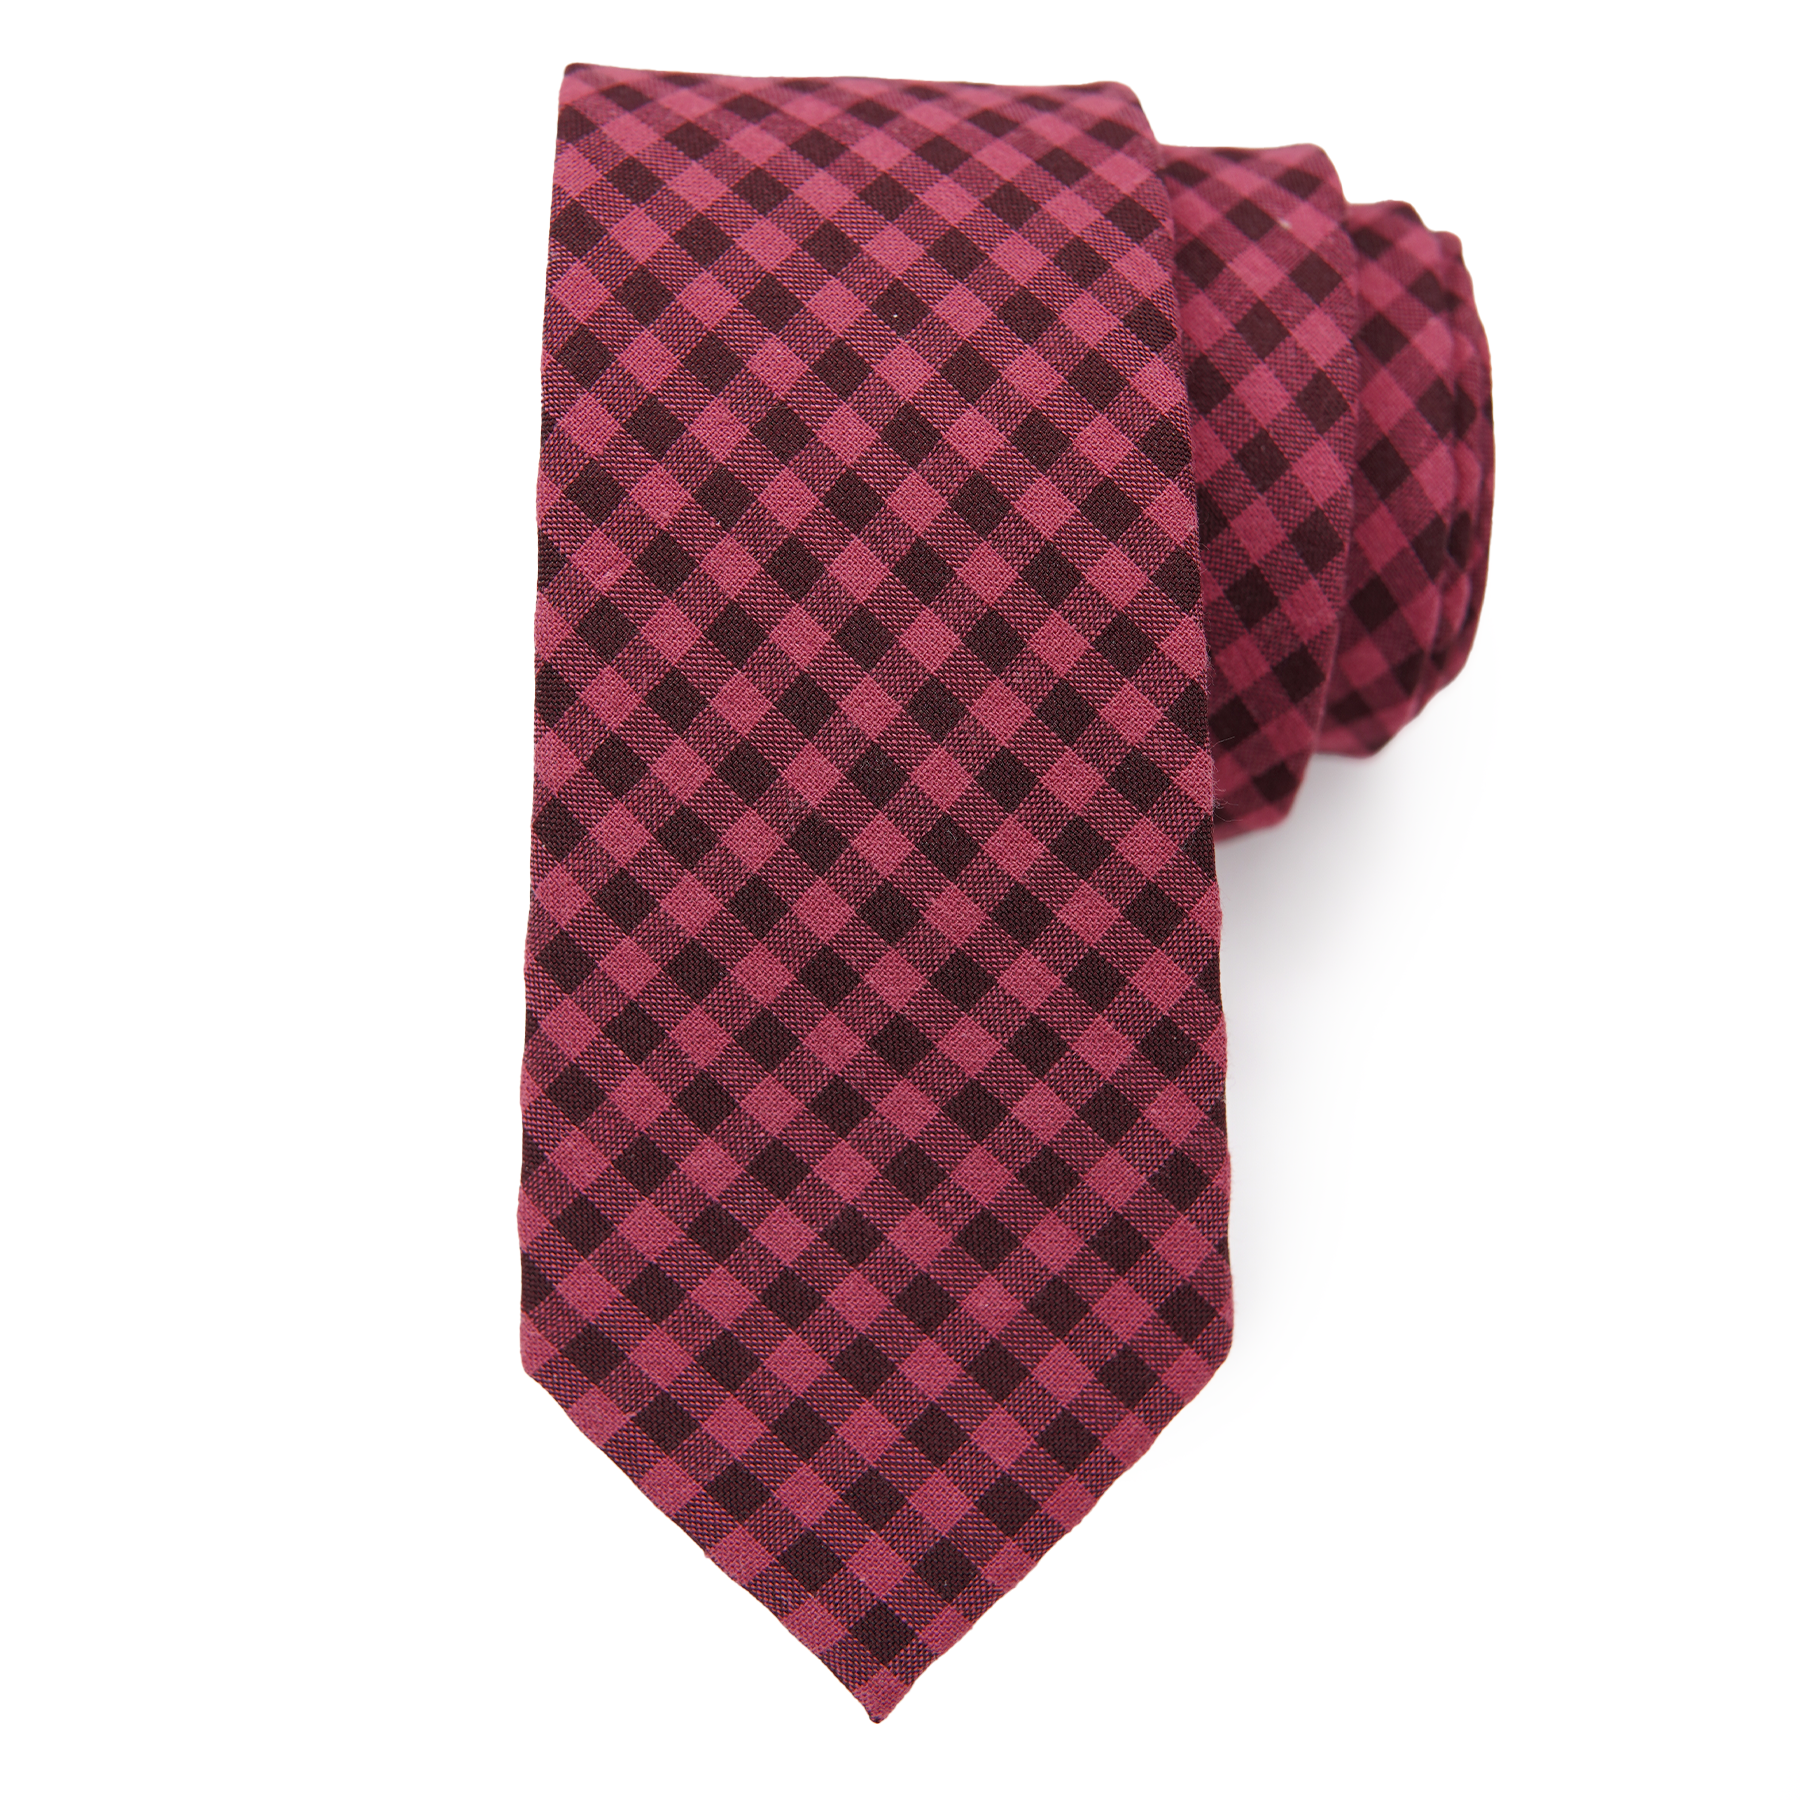 Razzleberry - Men's Tie